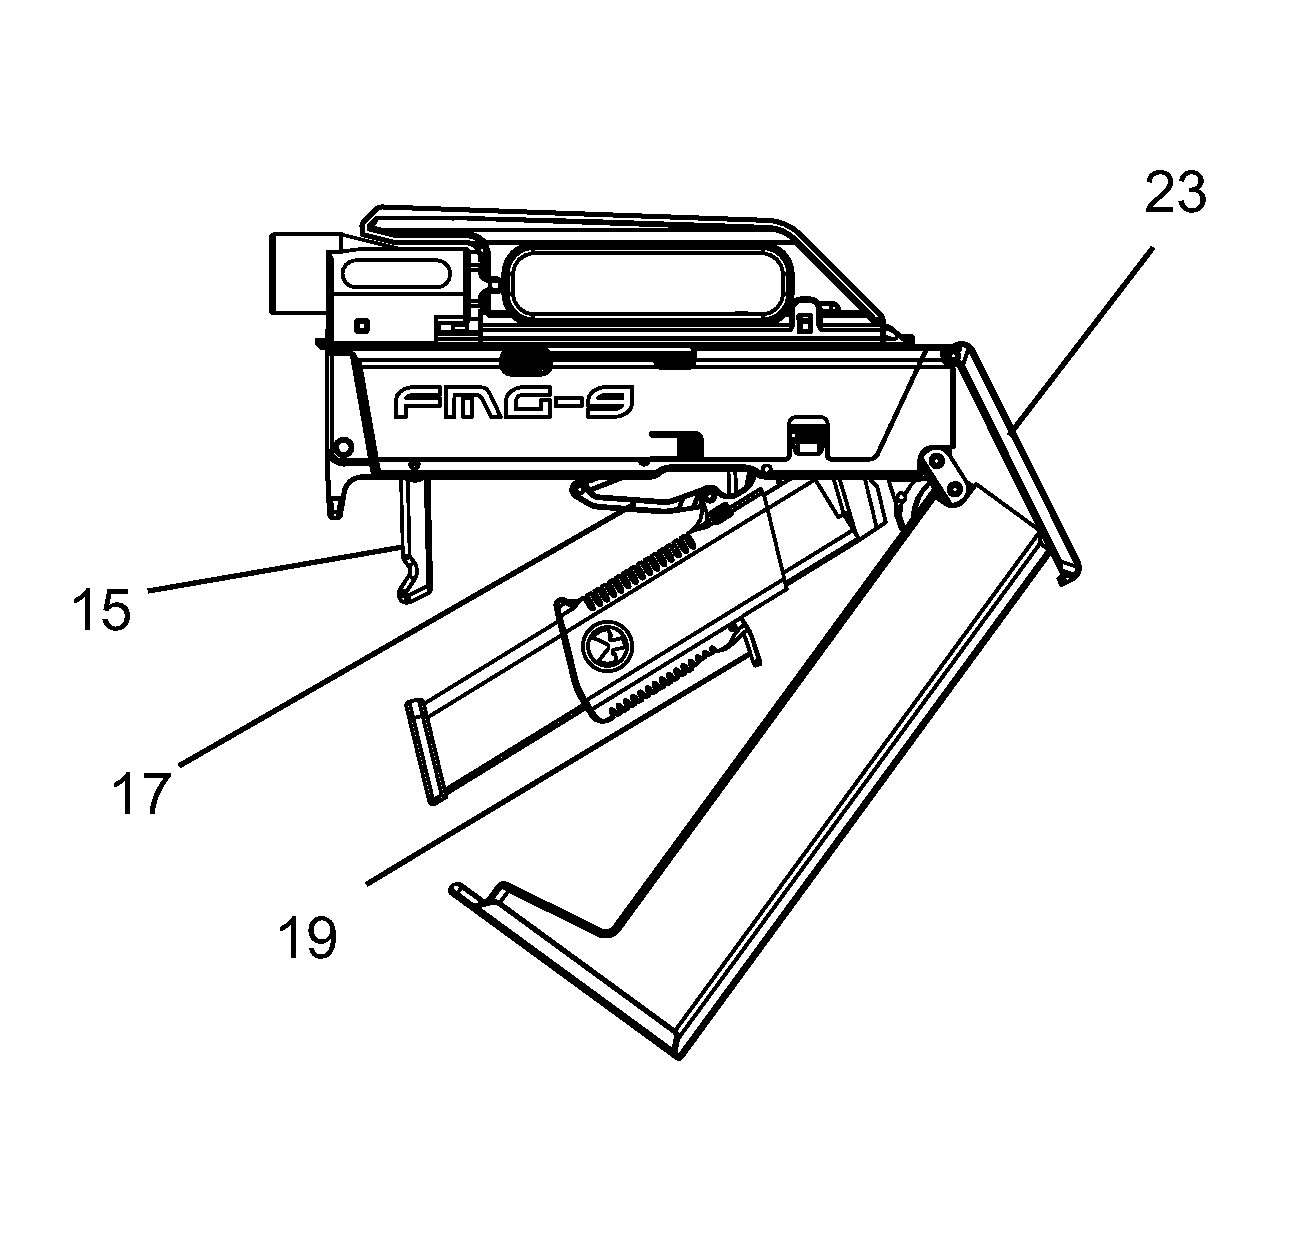 Foldable firearm